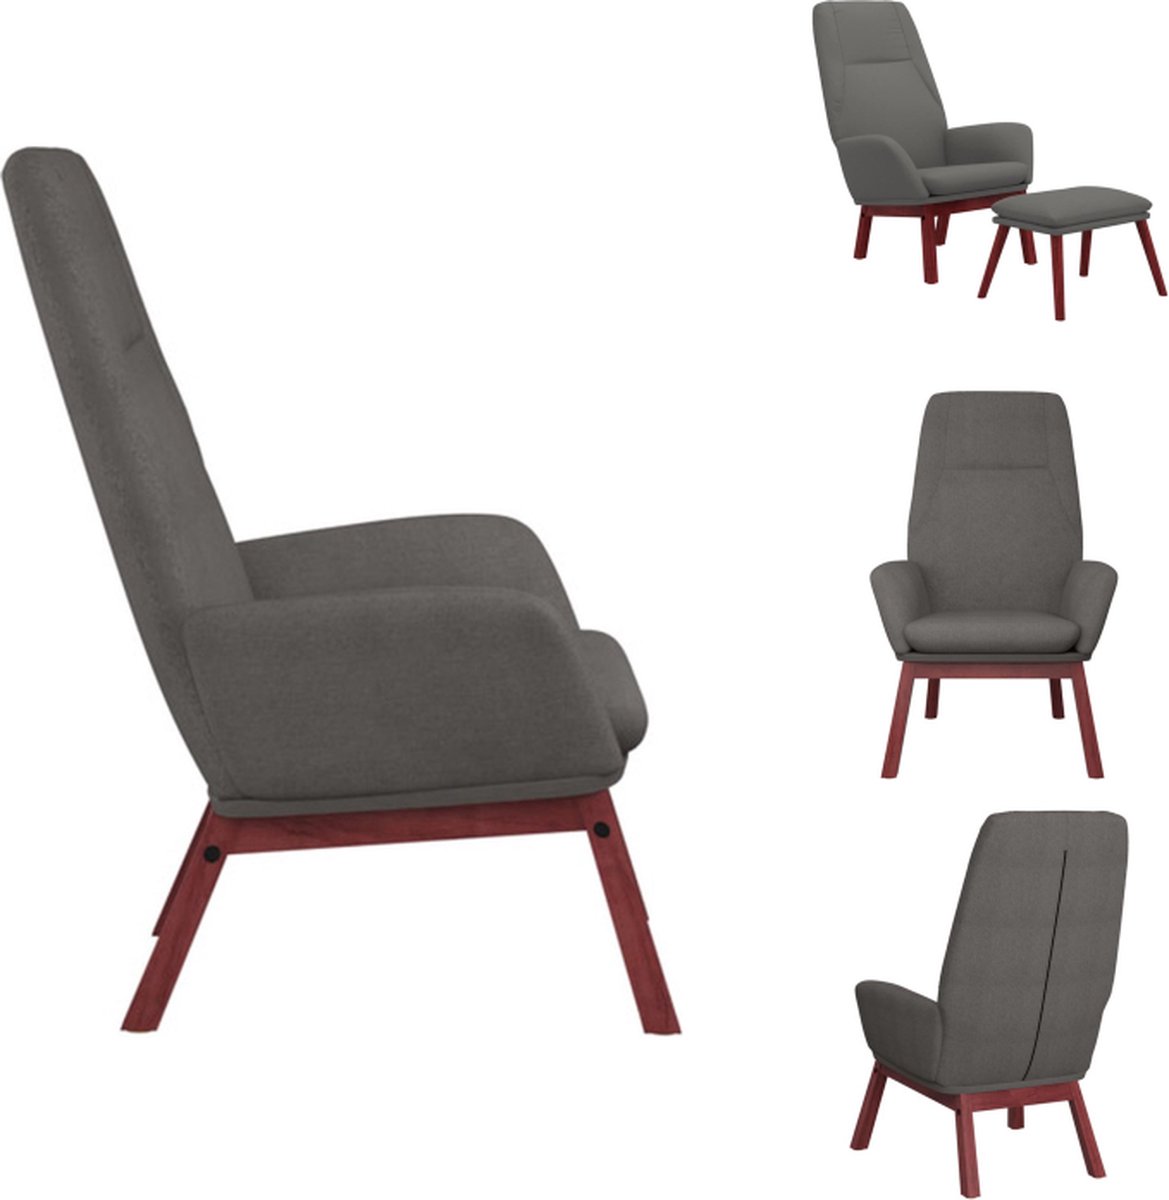 VidaXL Relaxstoel Relaxstoelen 70 x 77 x 94 cm Duurzaam lichtgrijs stof Massief rubberwood Fauteuil